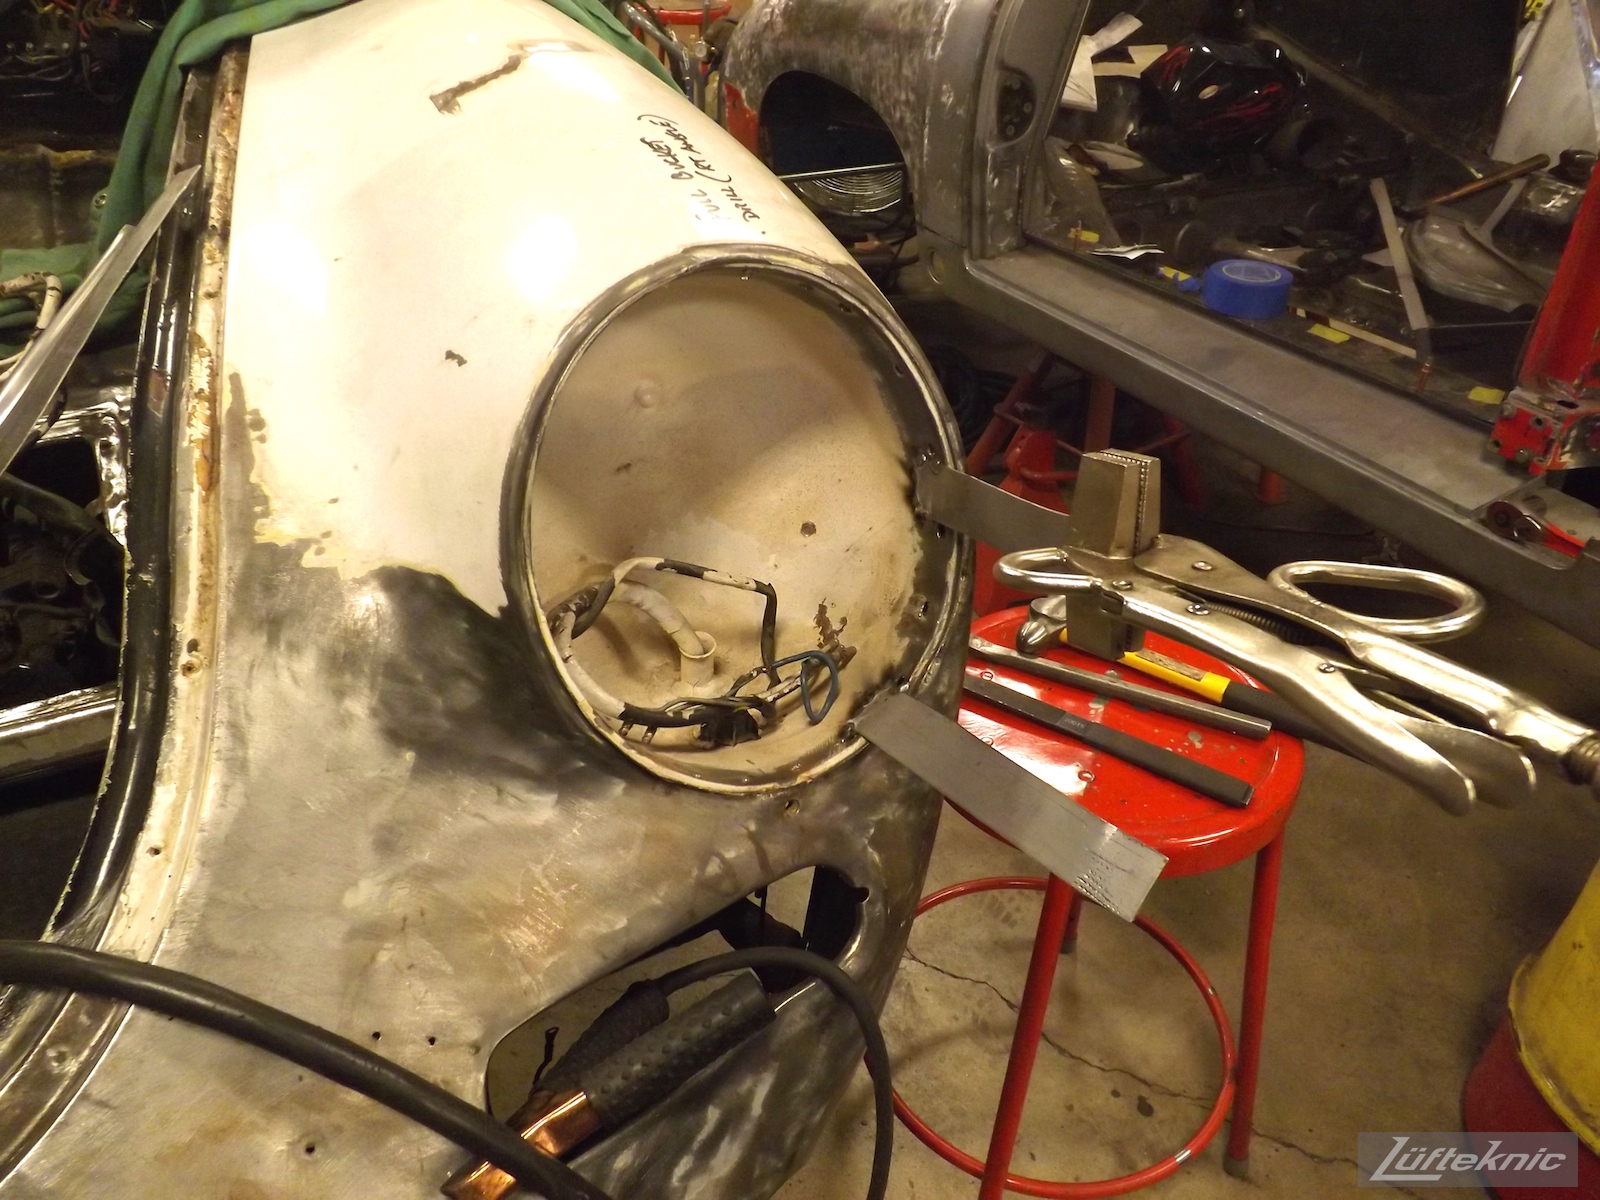 Headlight bucket adjustment on a White 1964 Porsche 356SC being restored.